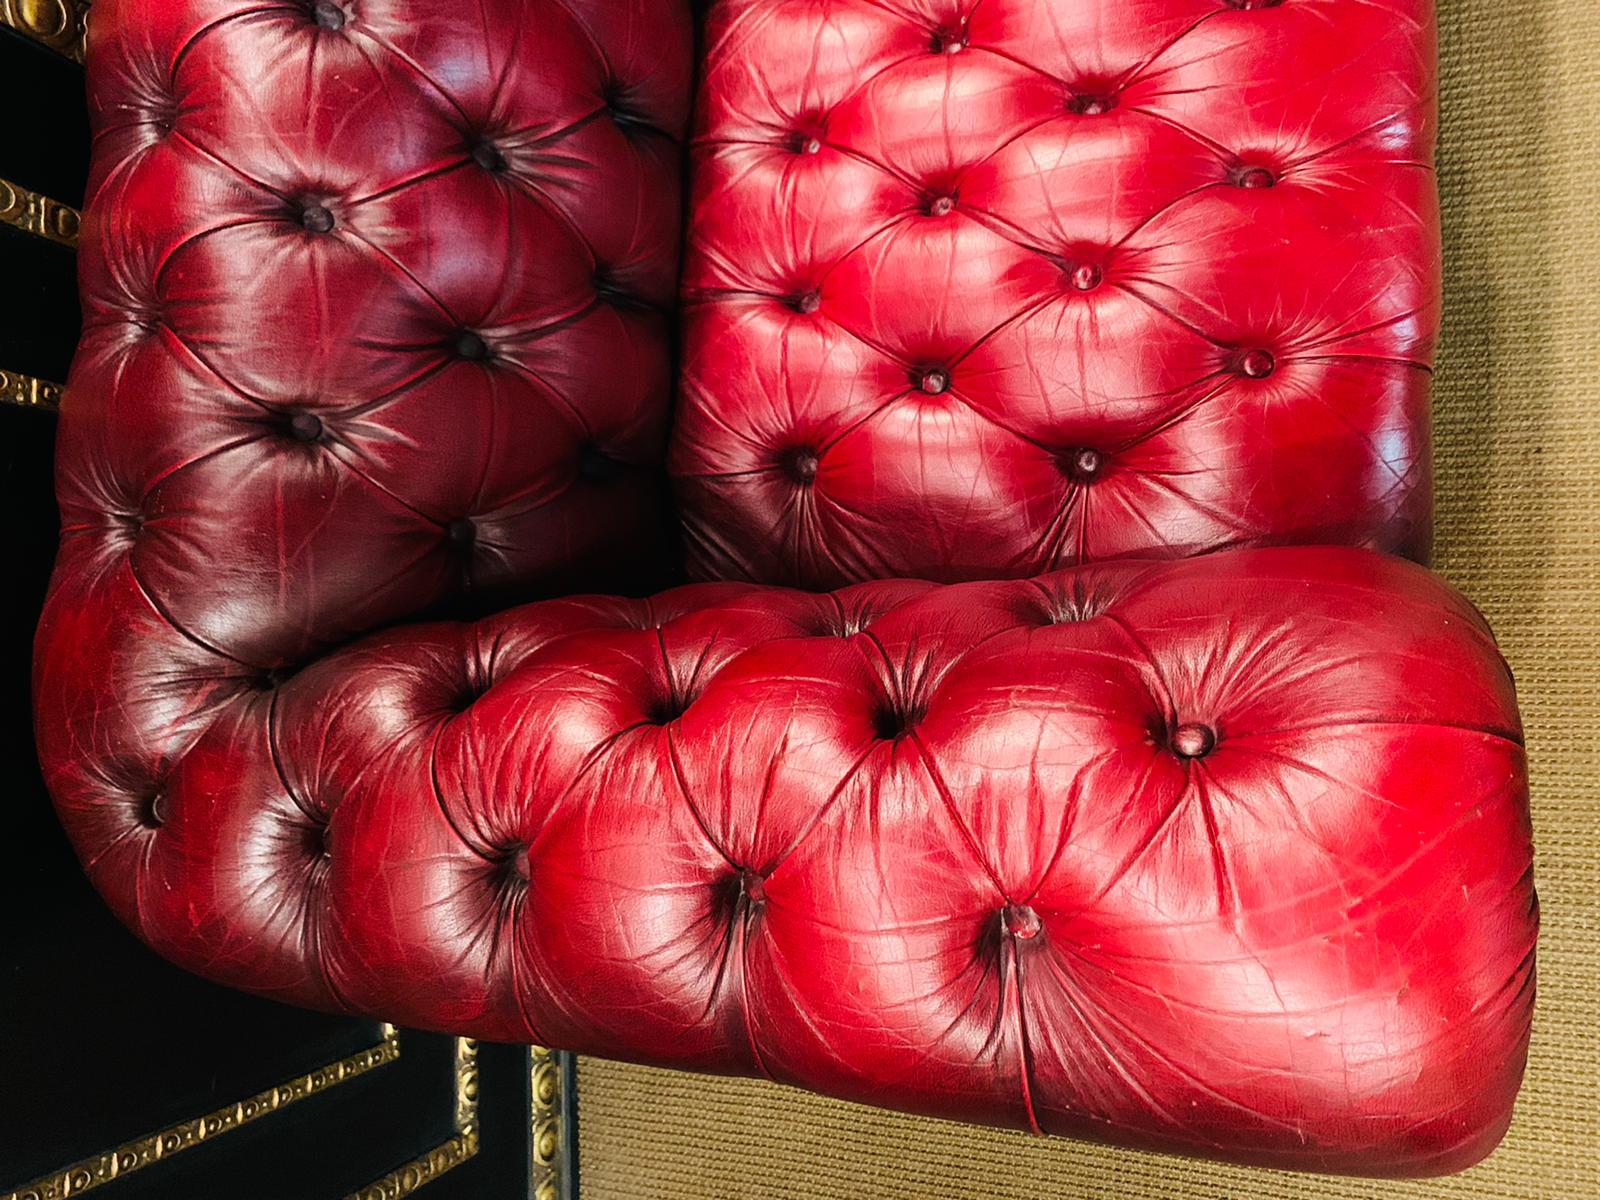 pendragon chesterfield sofa